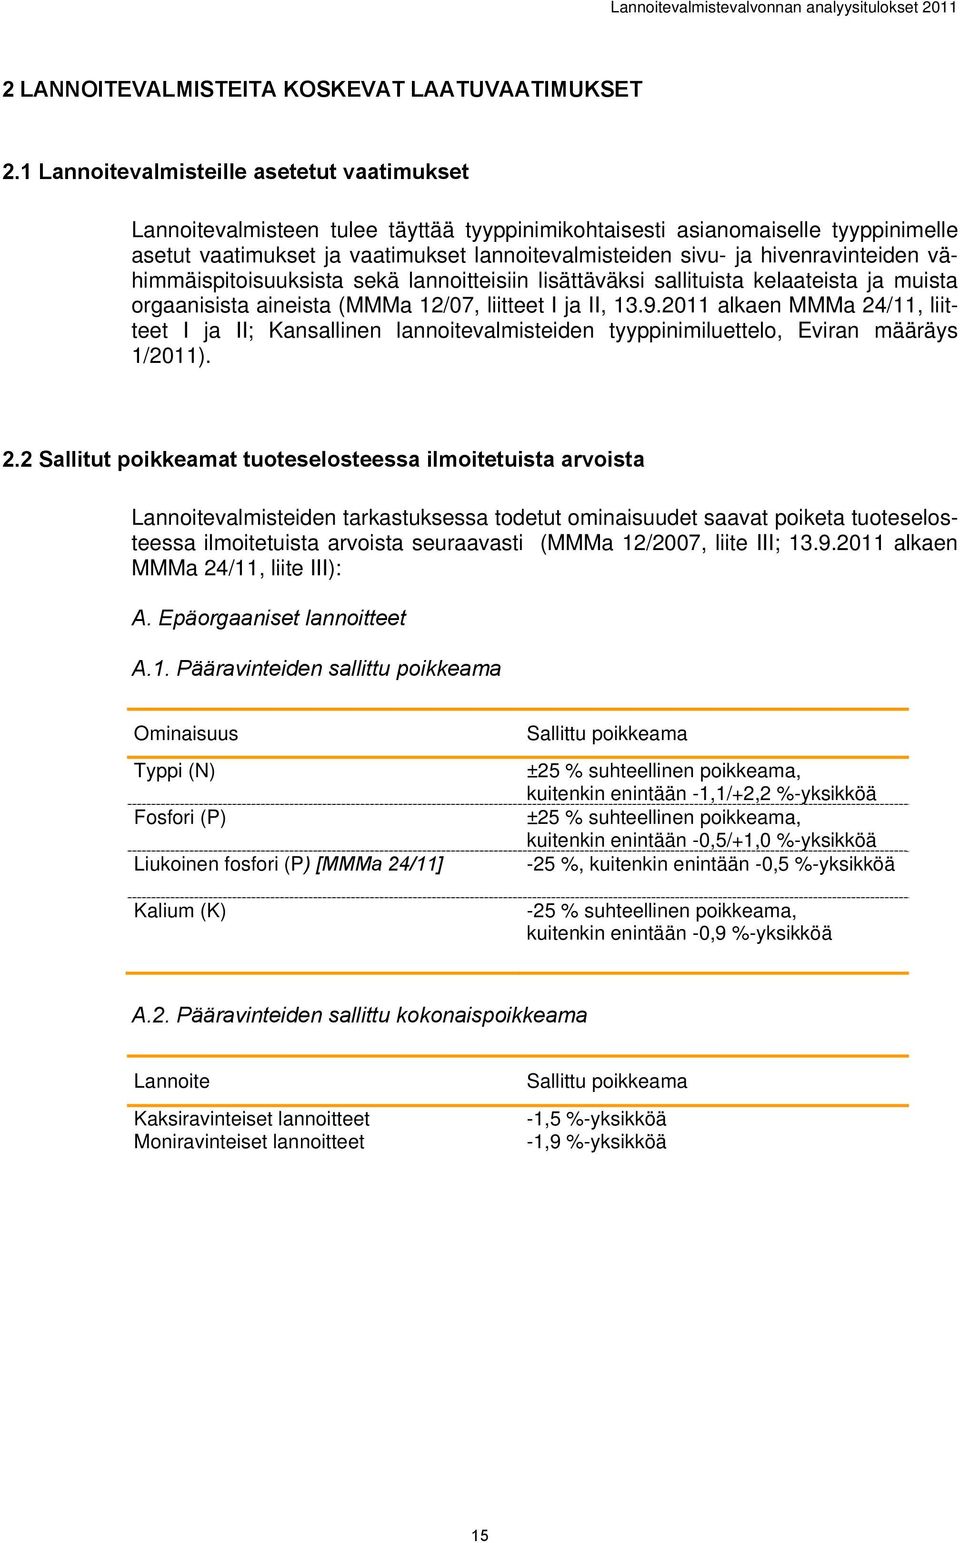 hivenravinteiden vähimmäispitoisuuksista sekä lannoitteisiin lisättäväksi sallituista kelaateista ja muista orgaanisista aineista (MMMa 12/07, liitteet I ja II, 13.9.